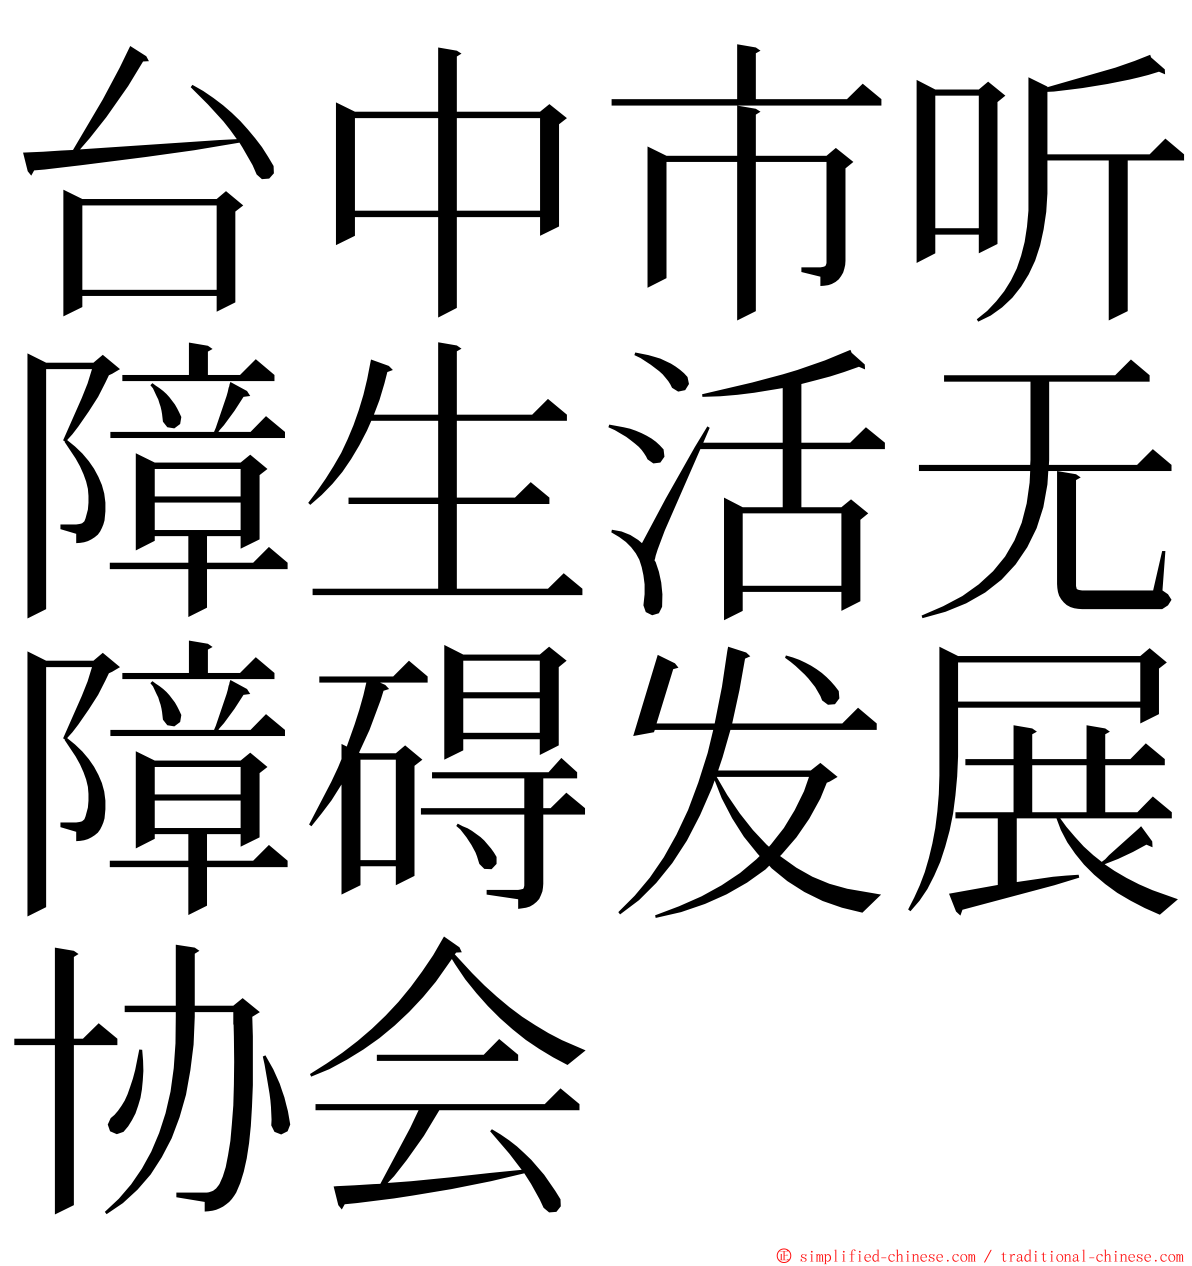 台中市听障生活无障碍发展协会 ming font